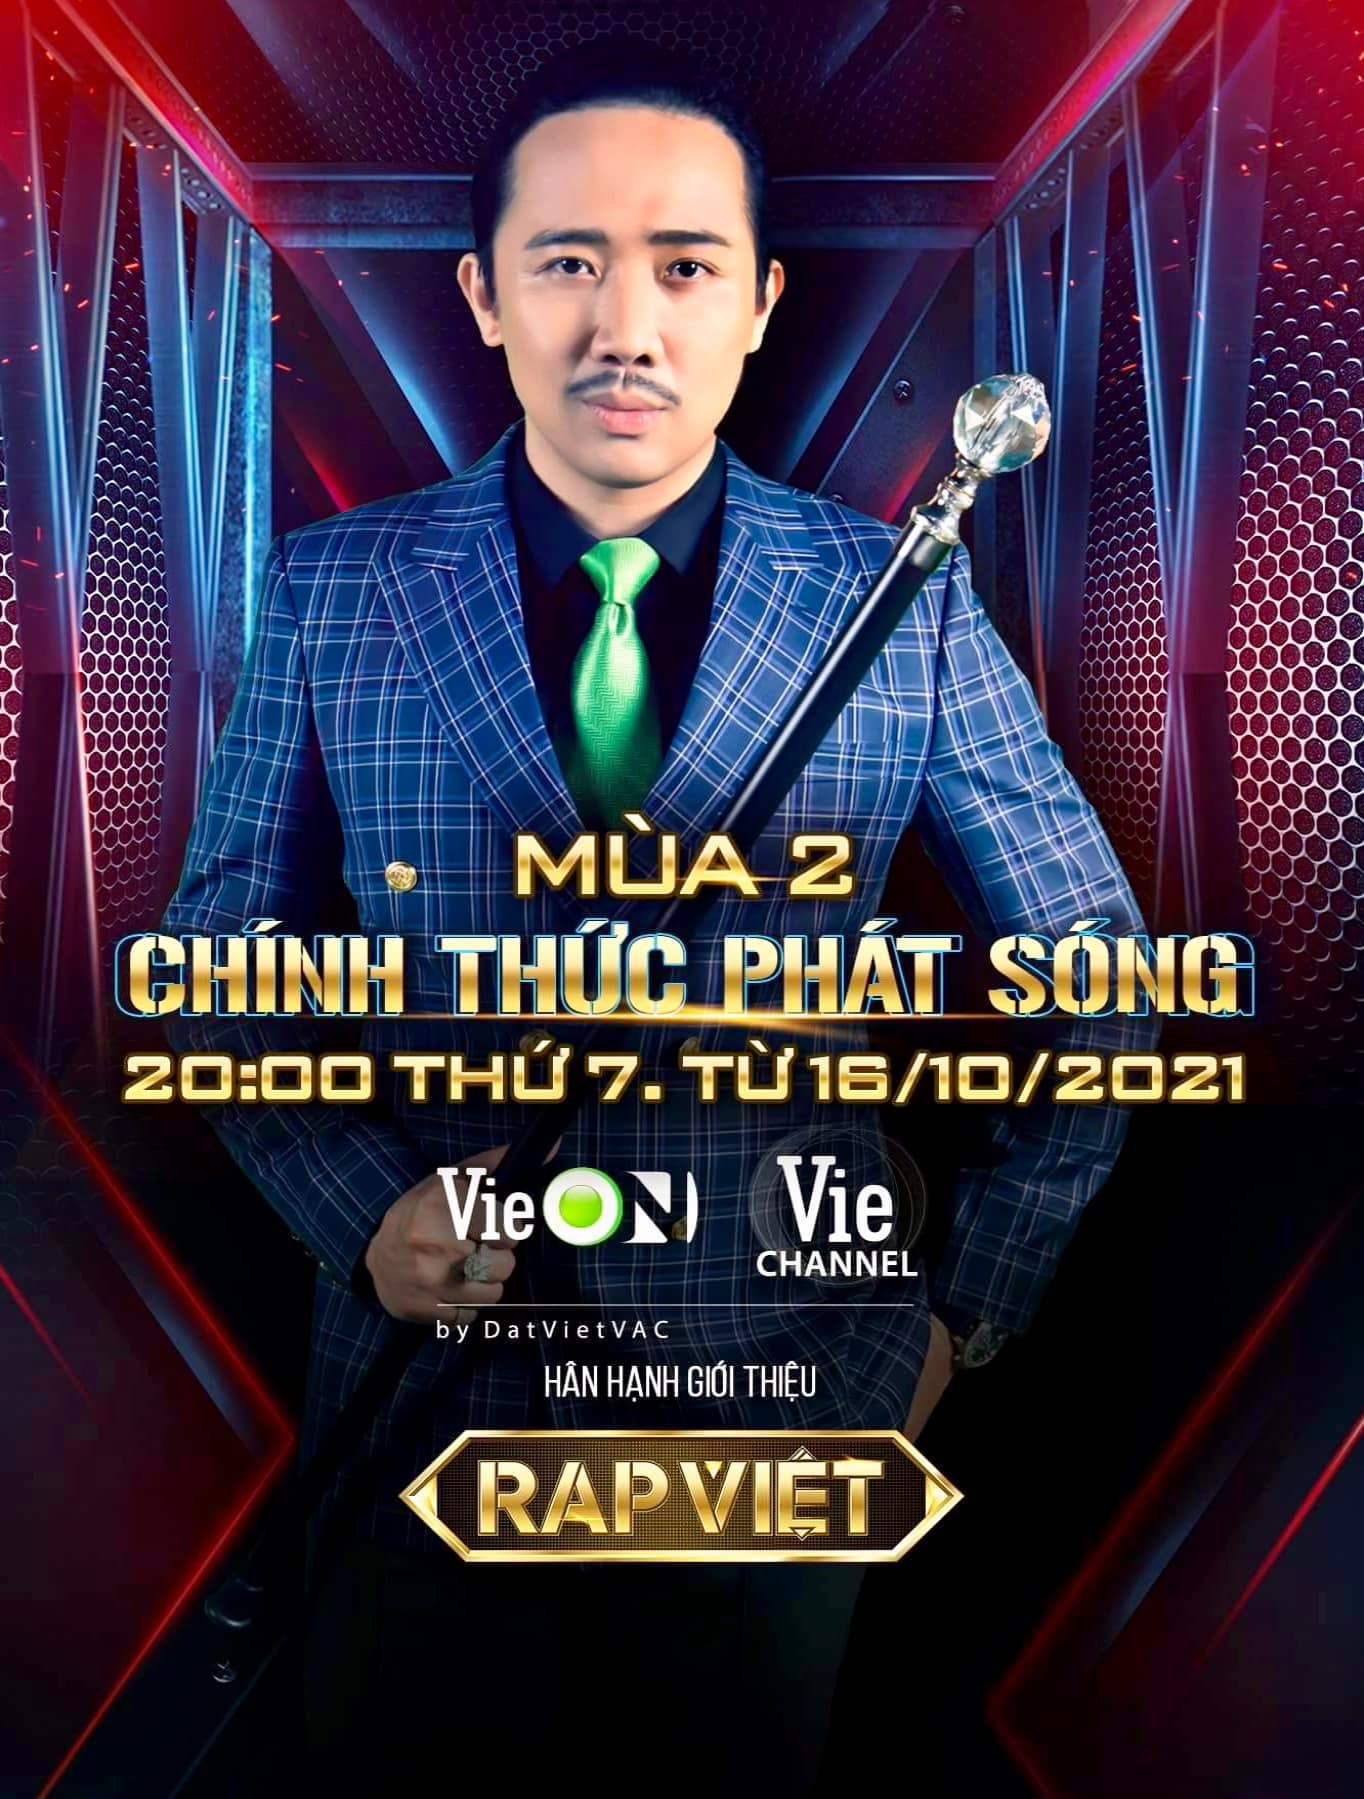 Hình ảnh Trấn Thành trong poster của Rap Việt làm xuất hiện không ít ý kiến trái chiều